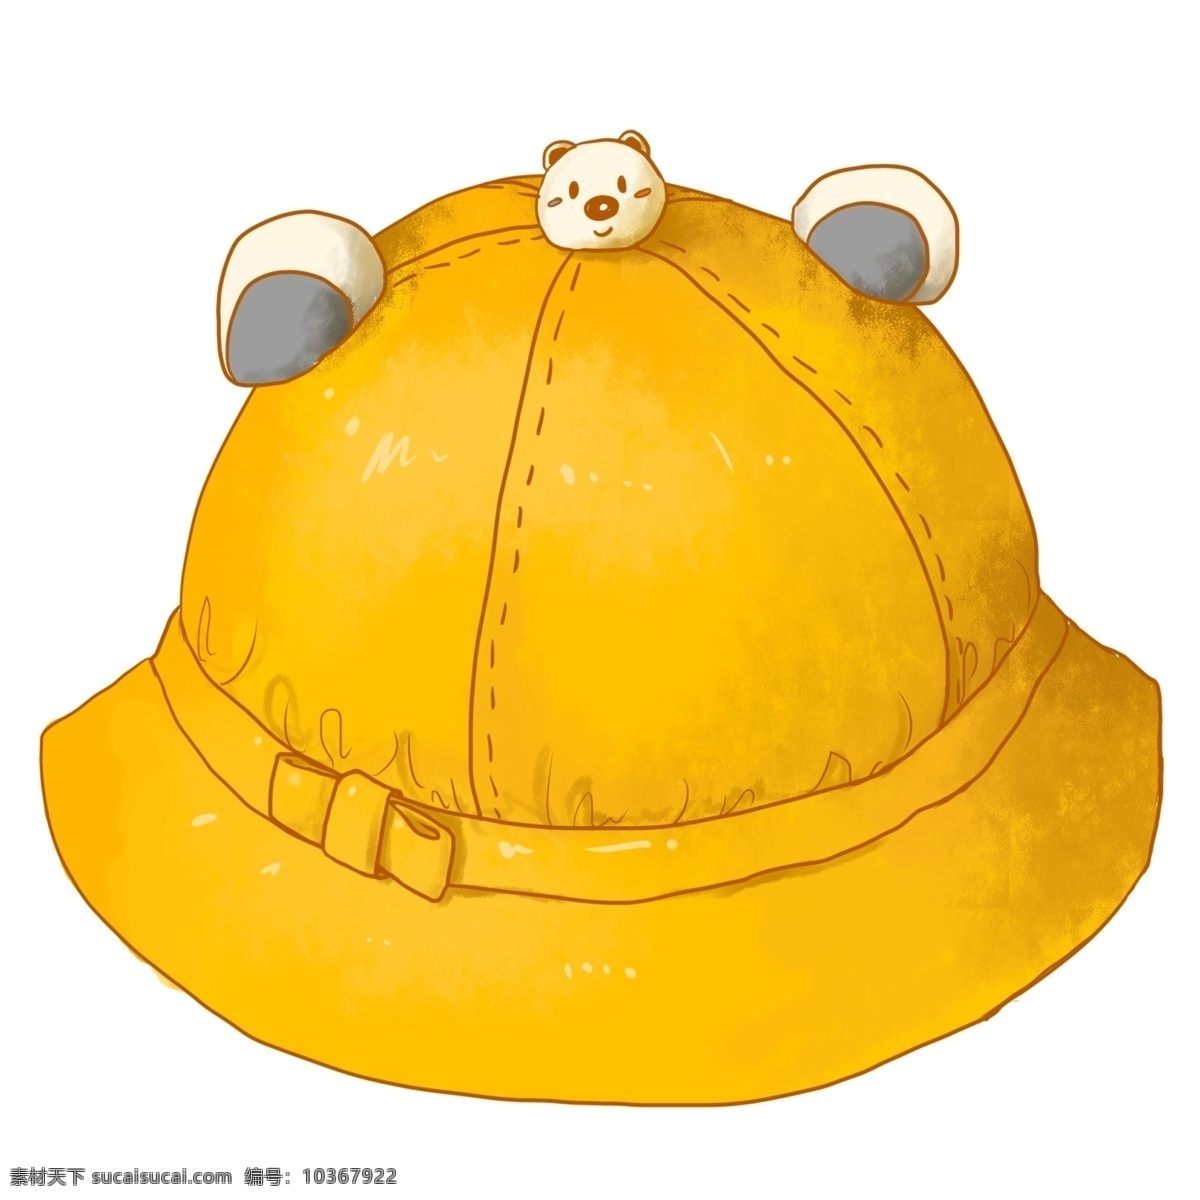 可爱 黄色 帽子 插画 可爱的帽子 黄色帽子 帽子装饰 漂亮的帽子 小熊装饰 卡通帽子 蝴蝶结 装饰